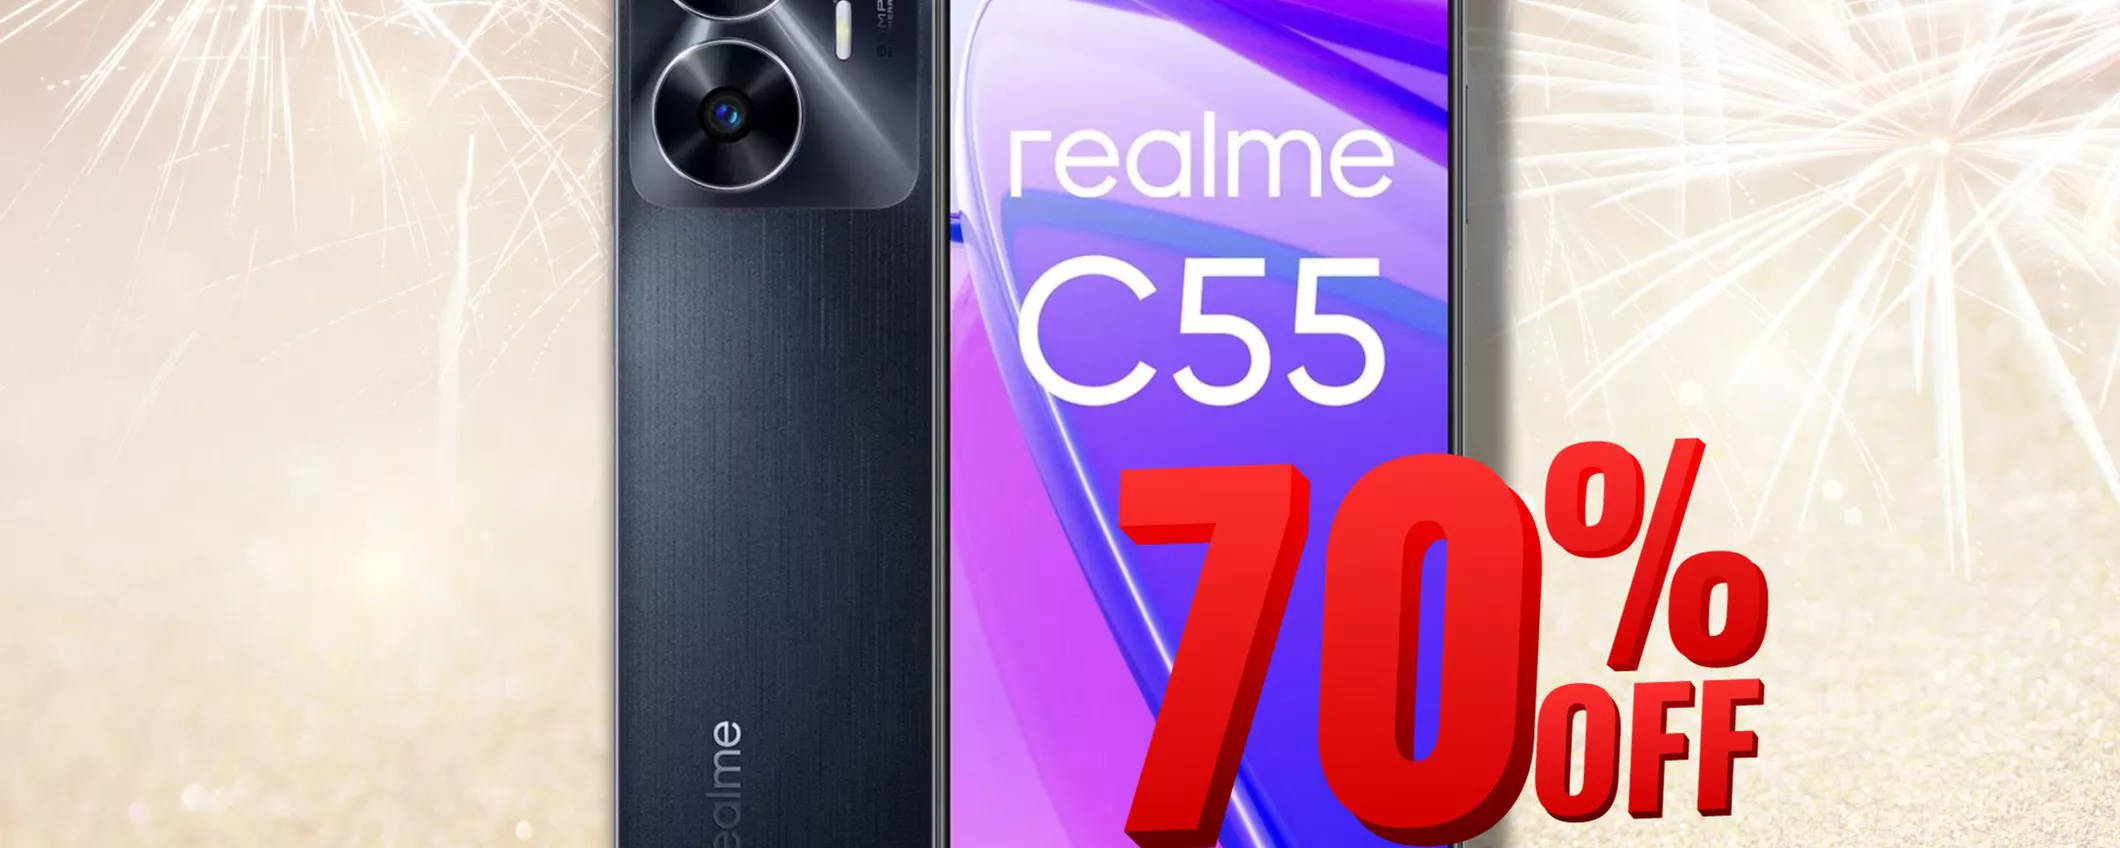 REALME C55 6+: Il Miglior Smartphone a Soli 147,90€ su eBay per poco tempo!